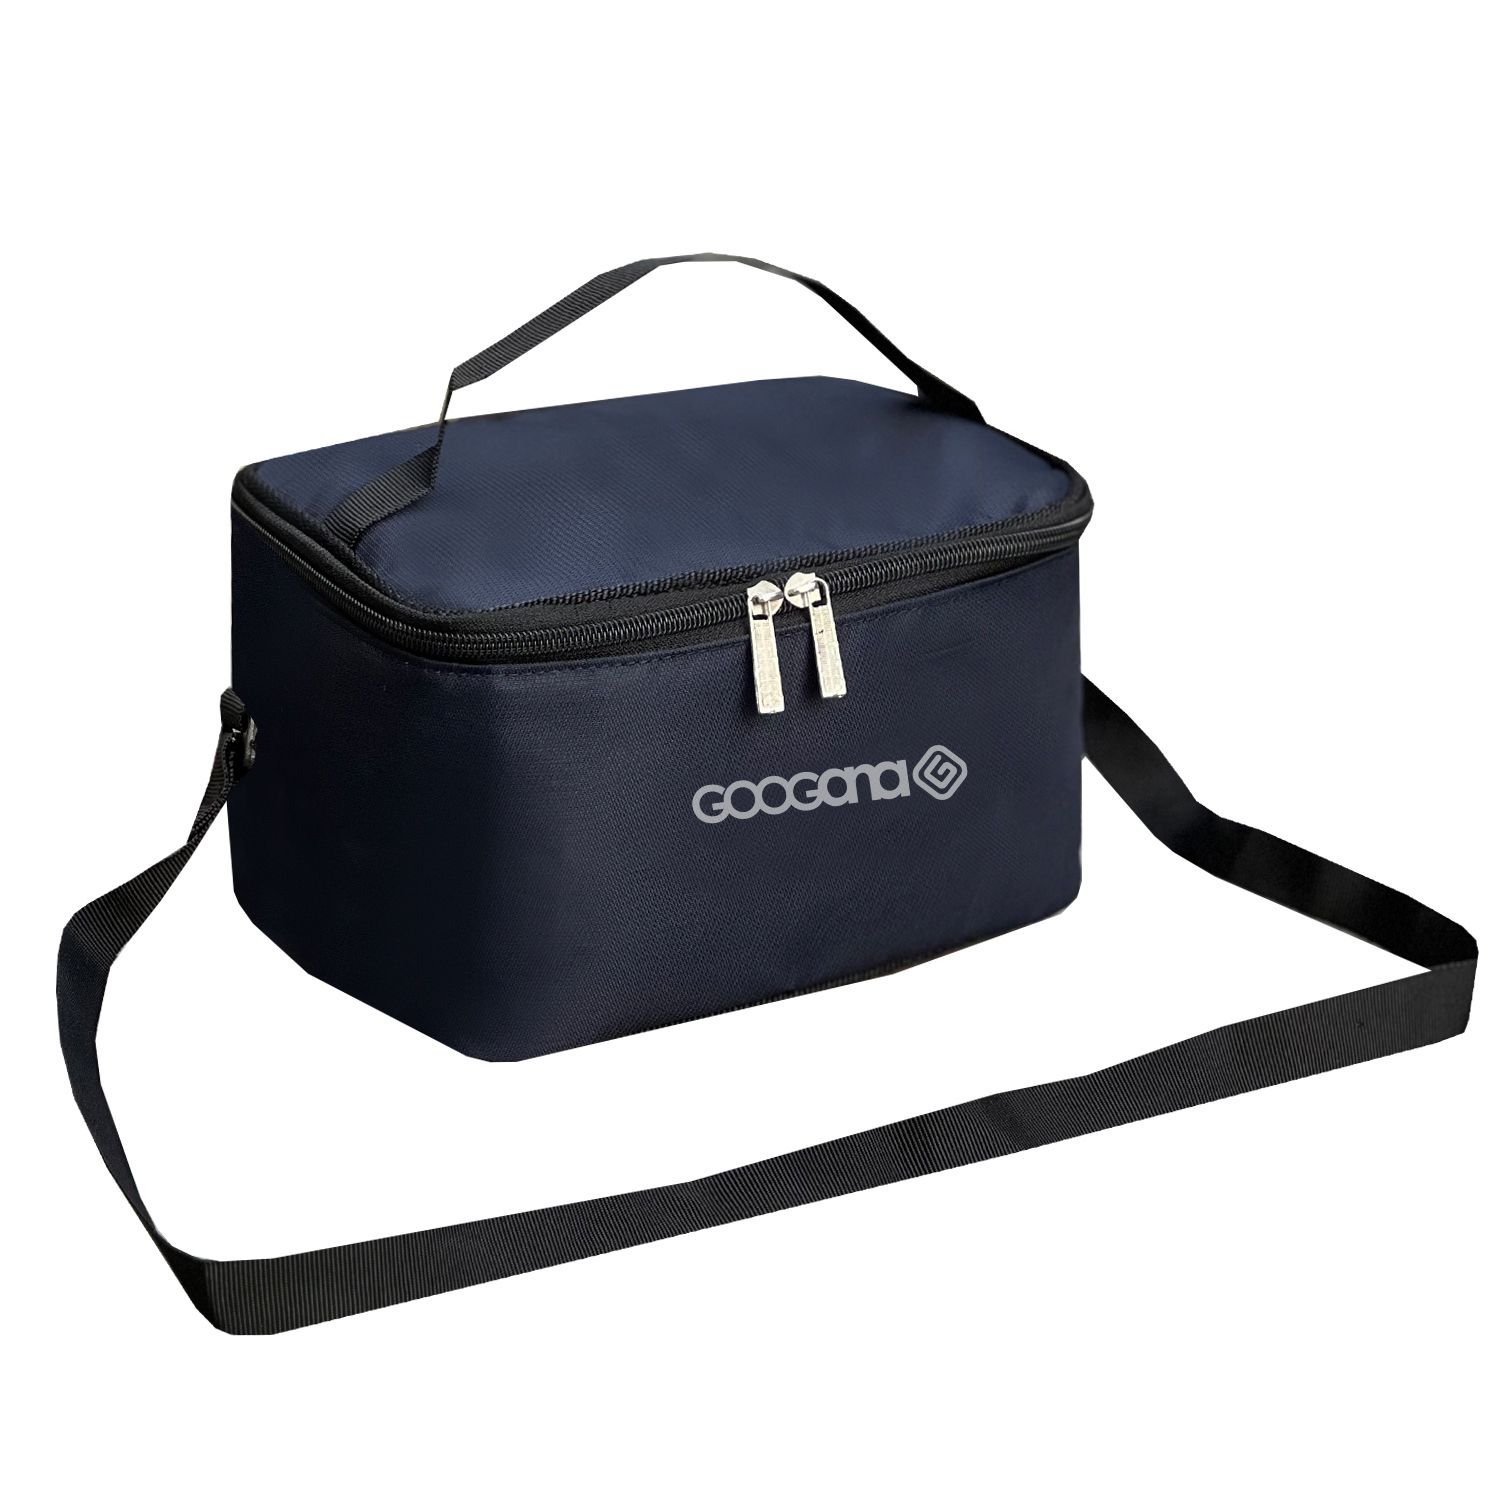 کیف عایق دار گوگانا مدل GOOG6020 LUNCH -  - 15